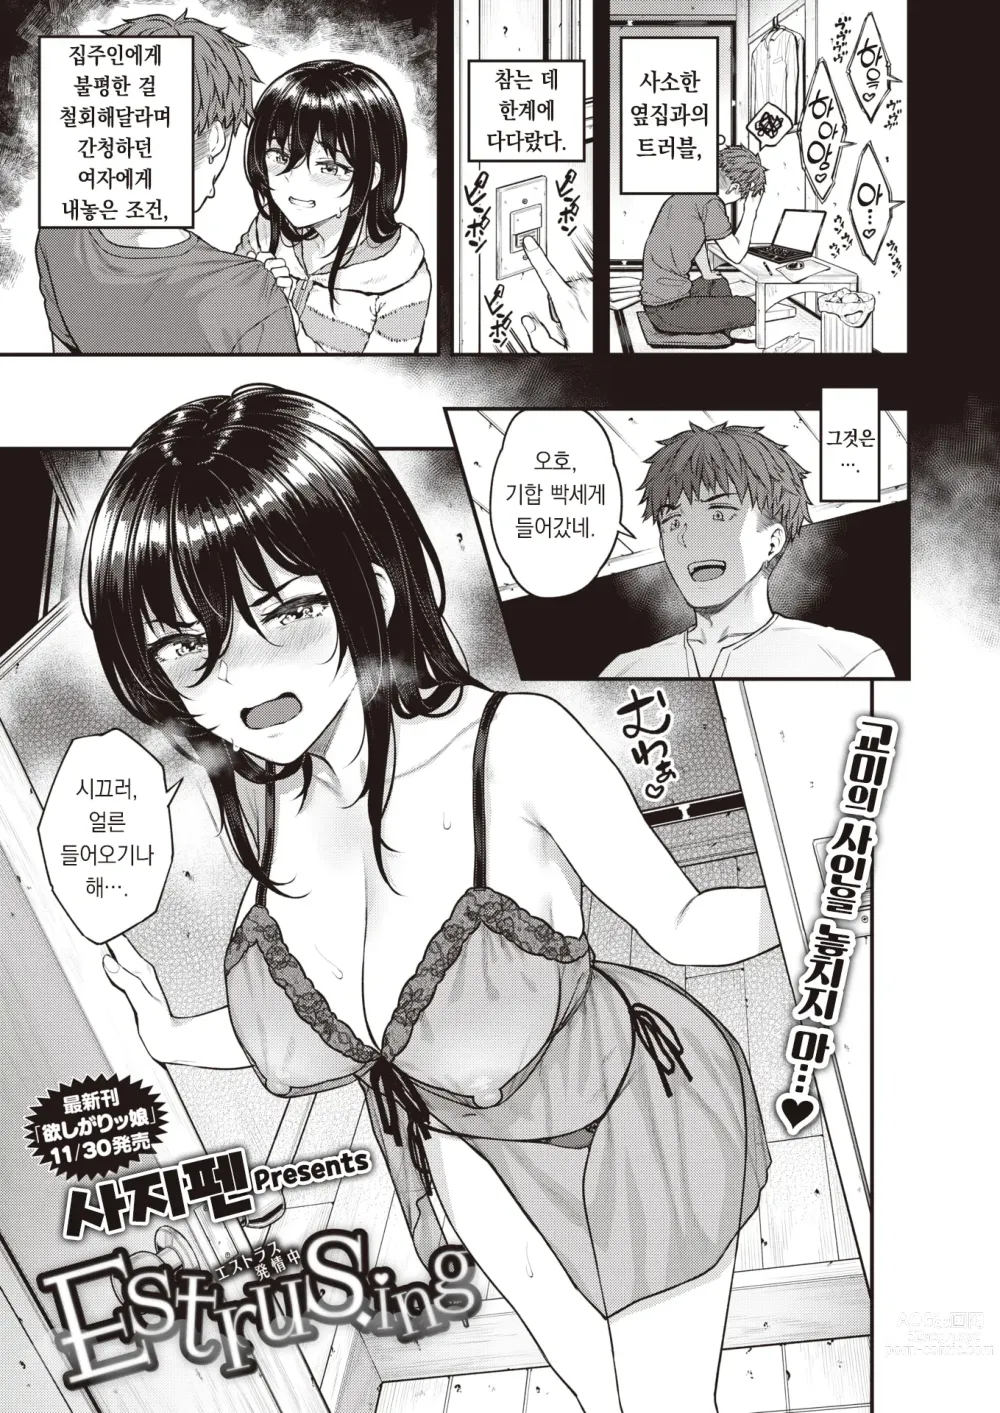 Page 2 of manga Estrus.ing